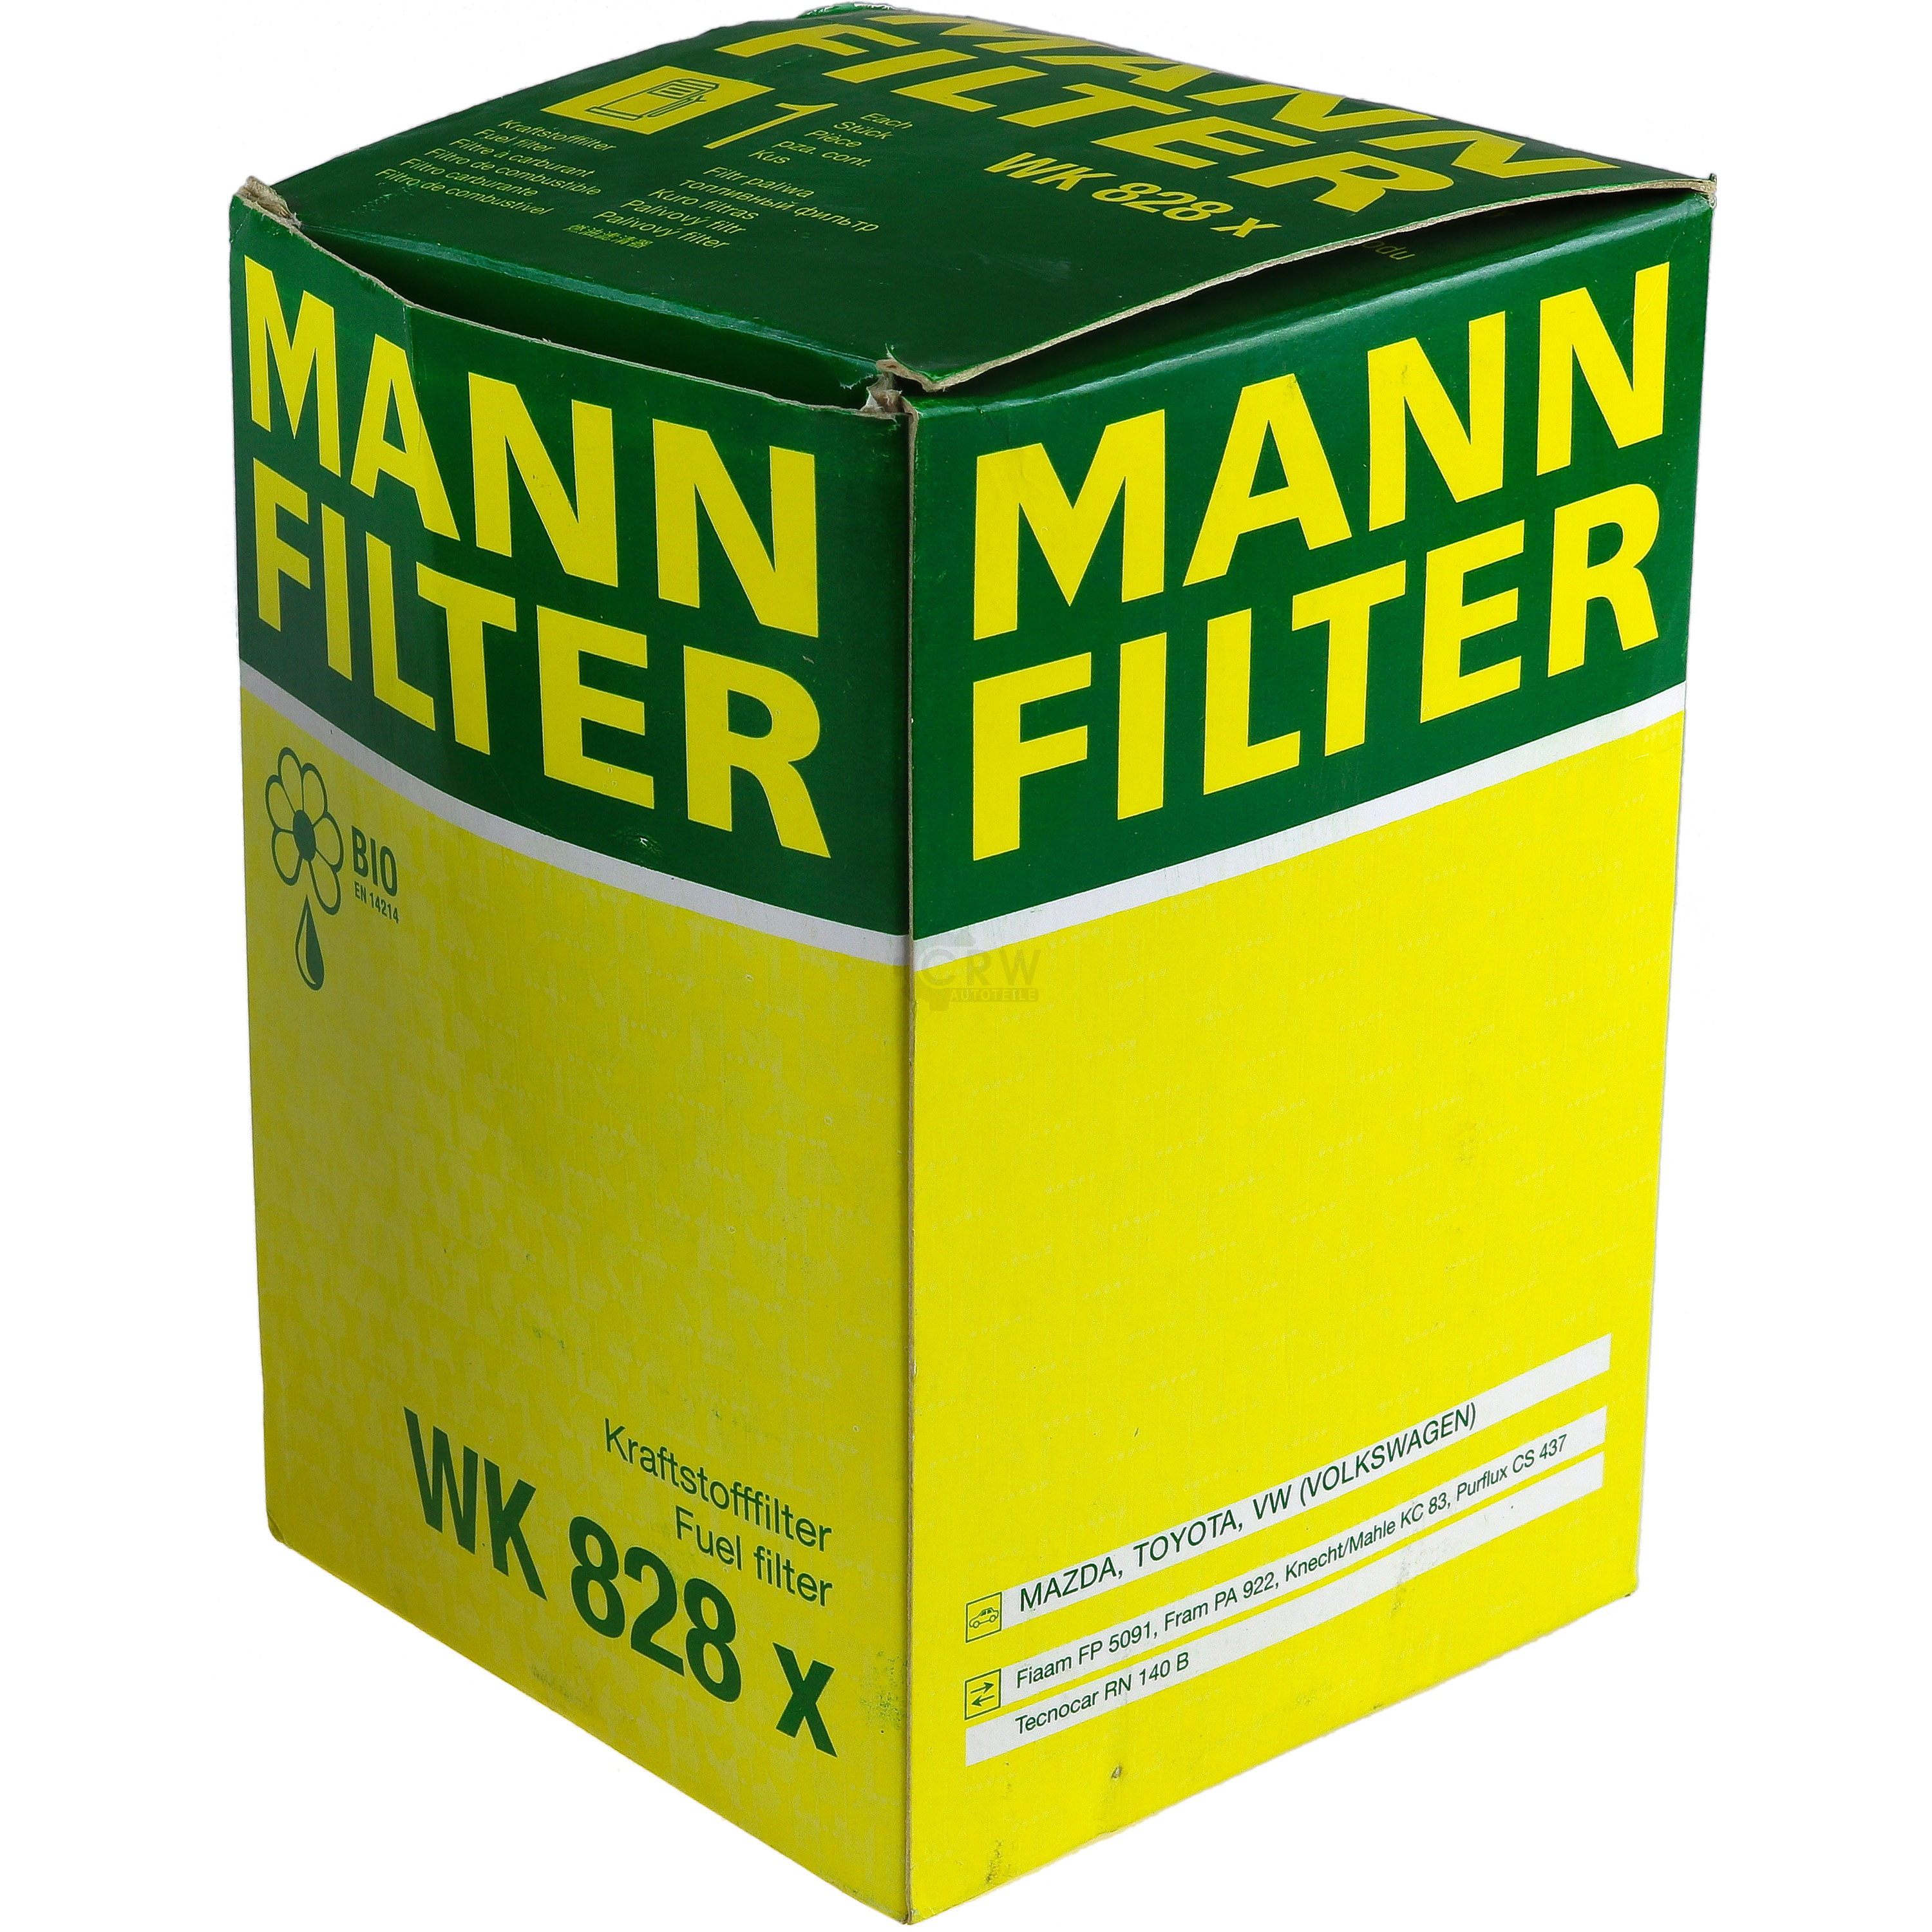 MANN-FILTER Kraftstofffilter WK 828 Fuel Filter